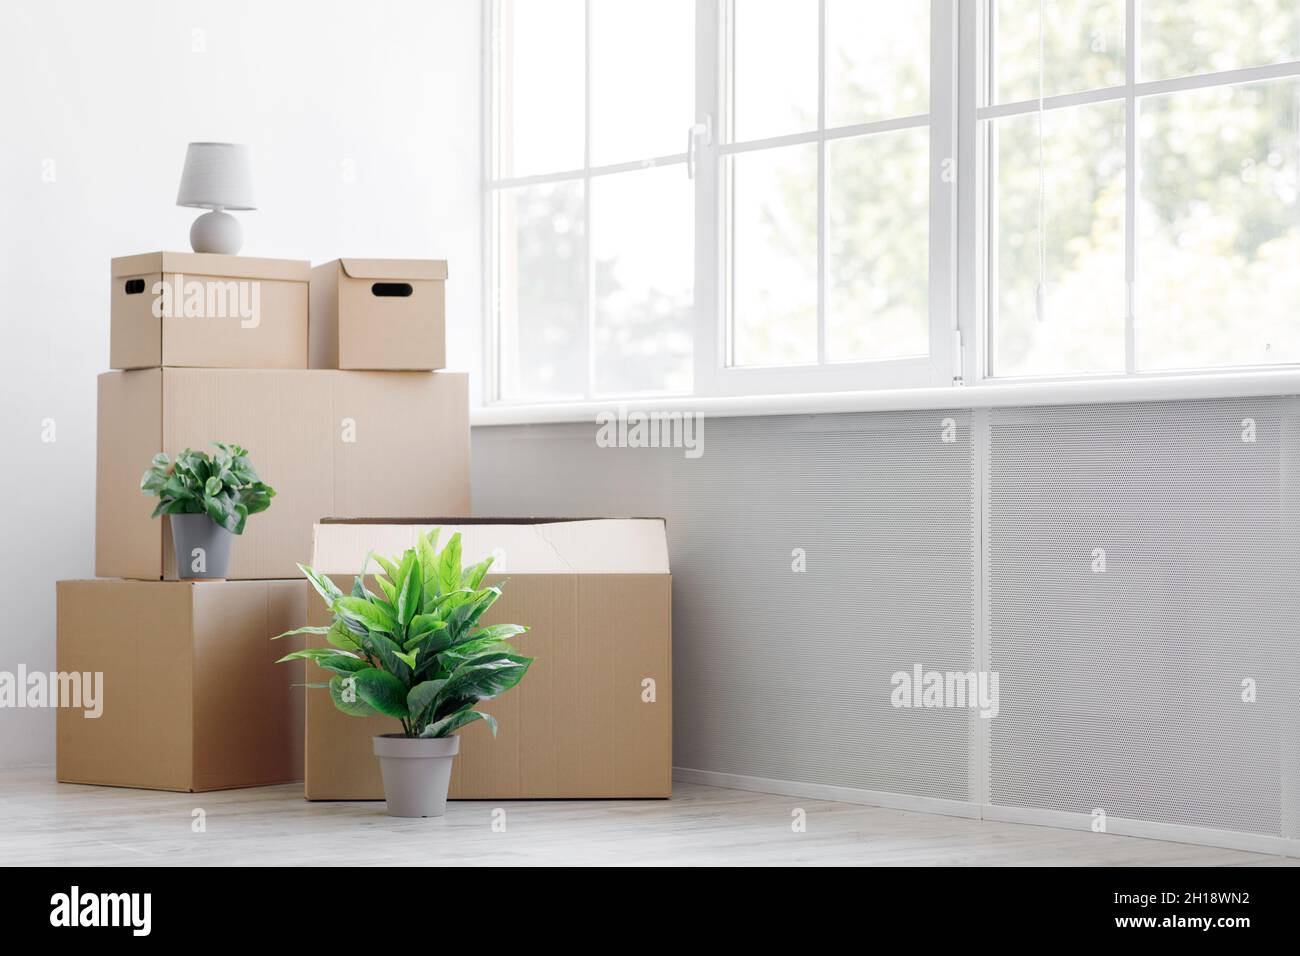 Pile de boîtes en carton avec effets personnels et plantes vertes dans des pots sur le sol près de la fenêtre, espace vide Banque D'Images